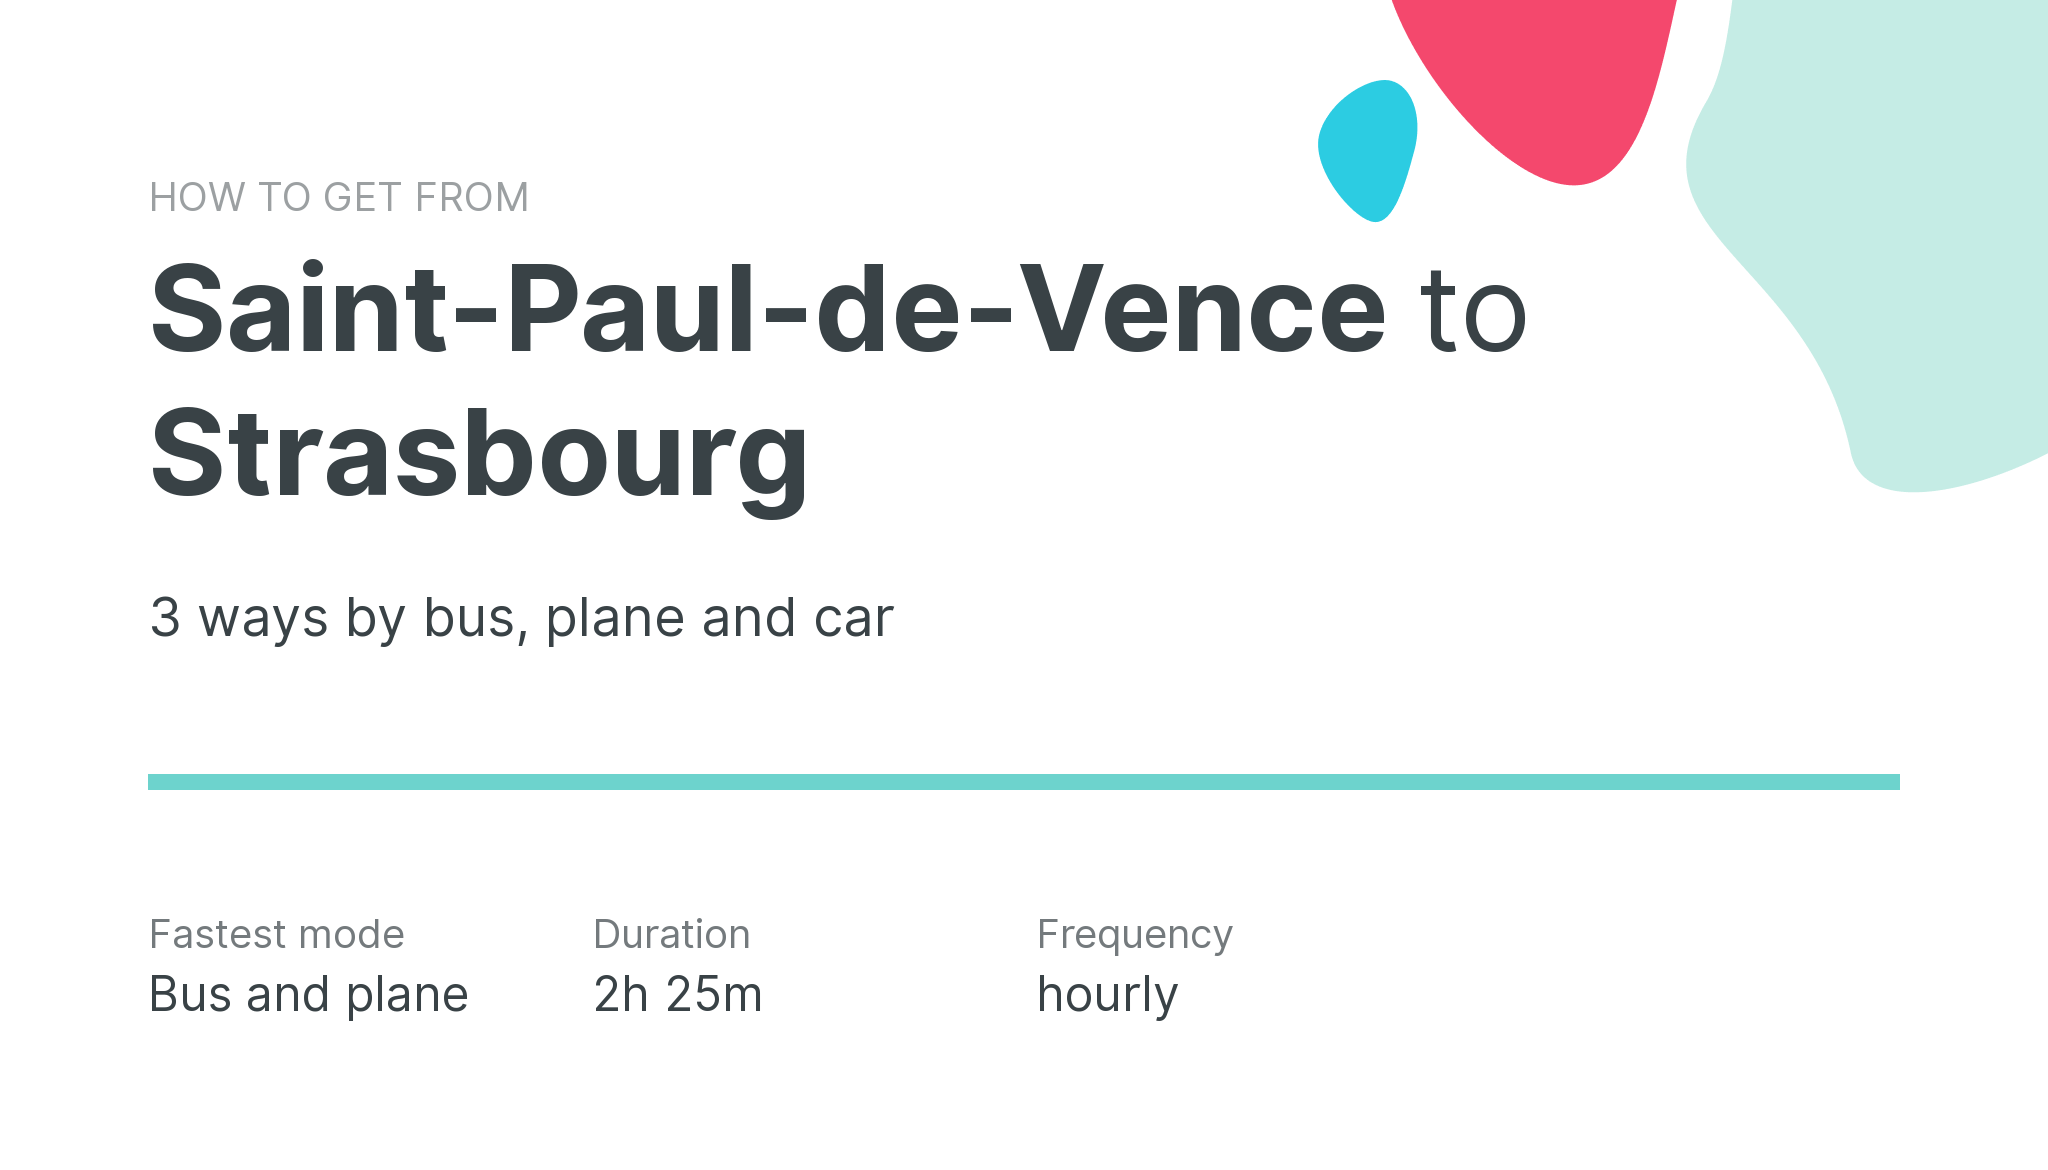 How do I get from Saint-Paul-de-Vence to Strasbourg